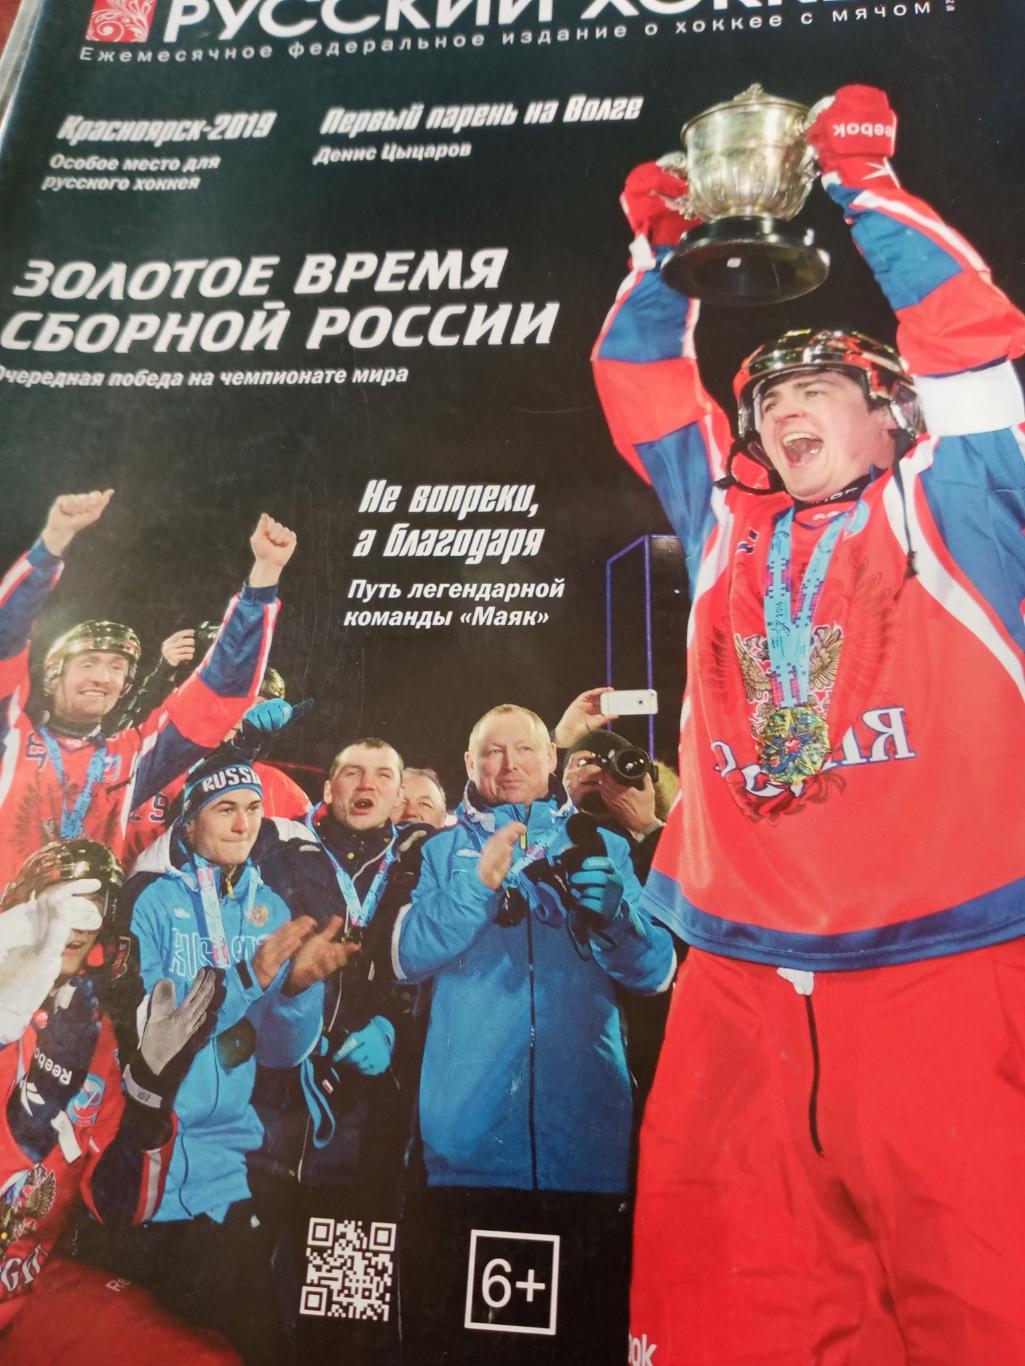 Русский хоккей. Февраль 2018 г.